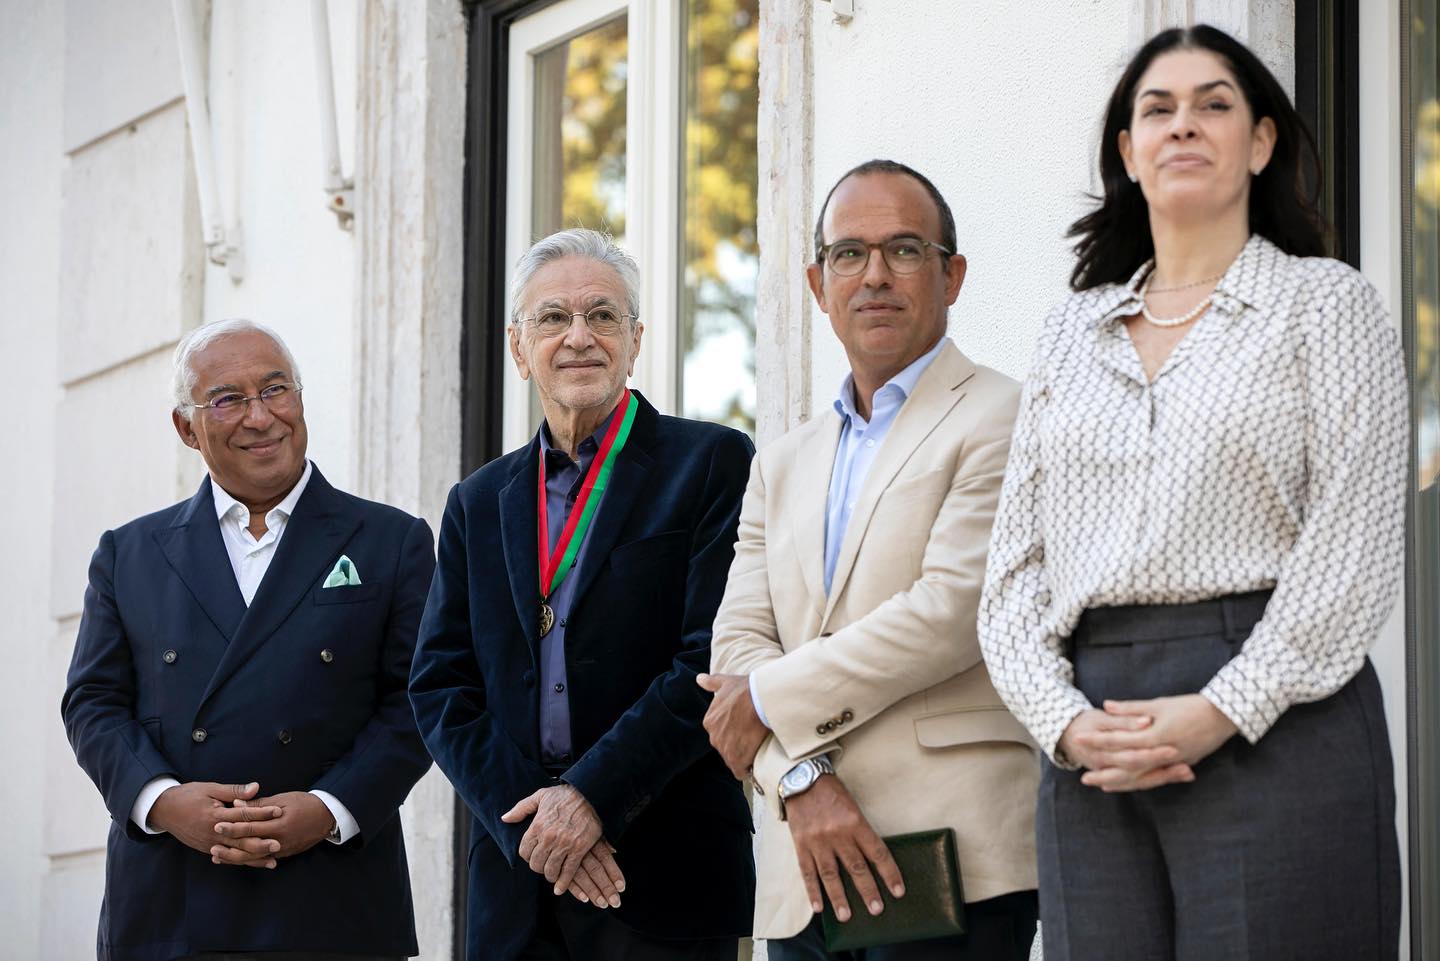 Primeiro-ministro condecorou Caetano Veloso e realçou o afeto e defesa da língua portuguesa pelo músico